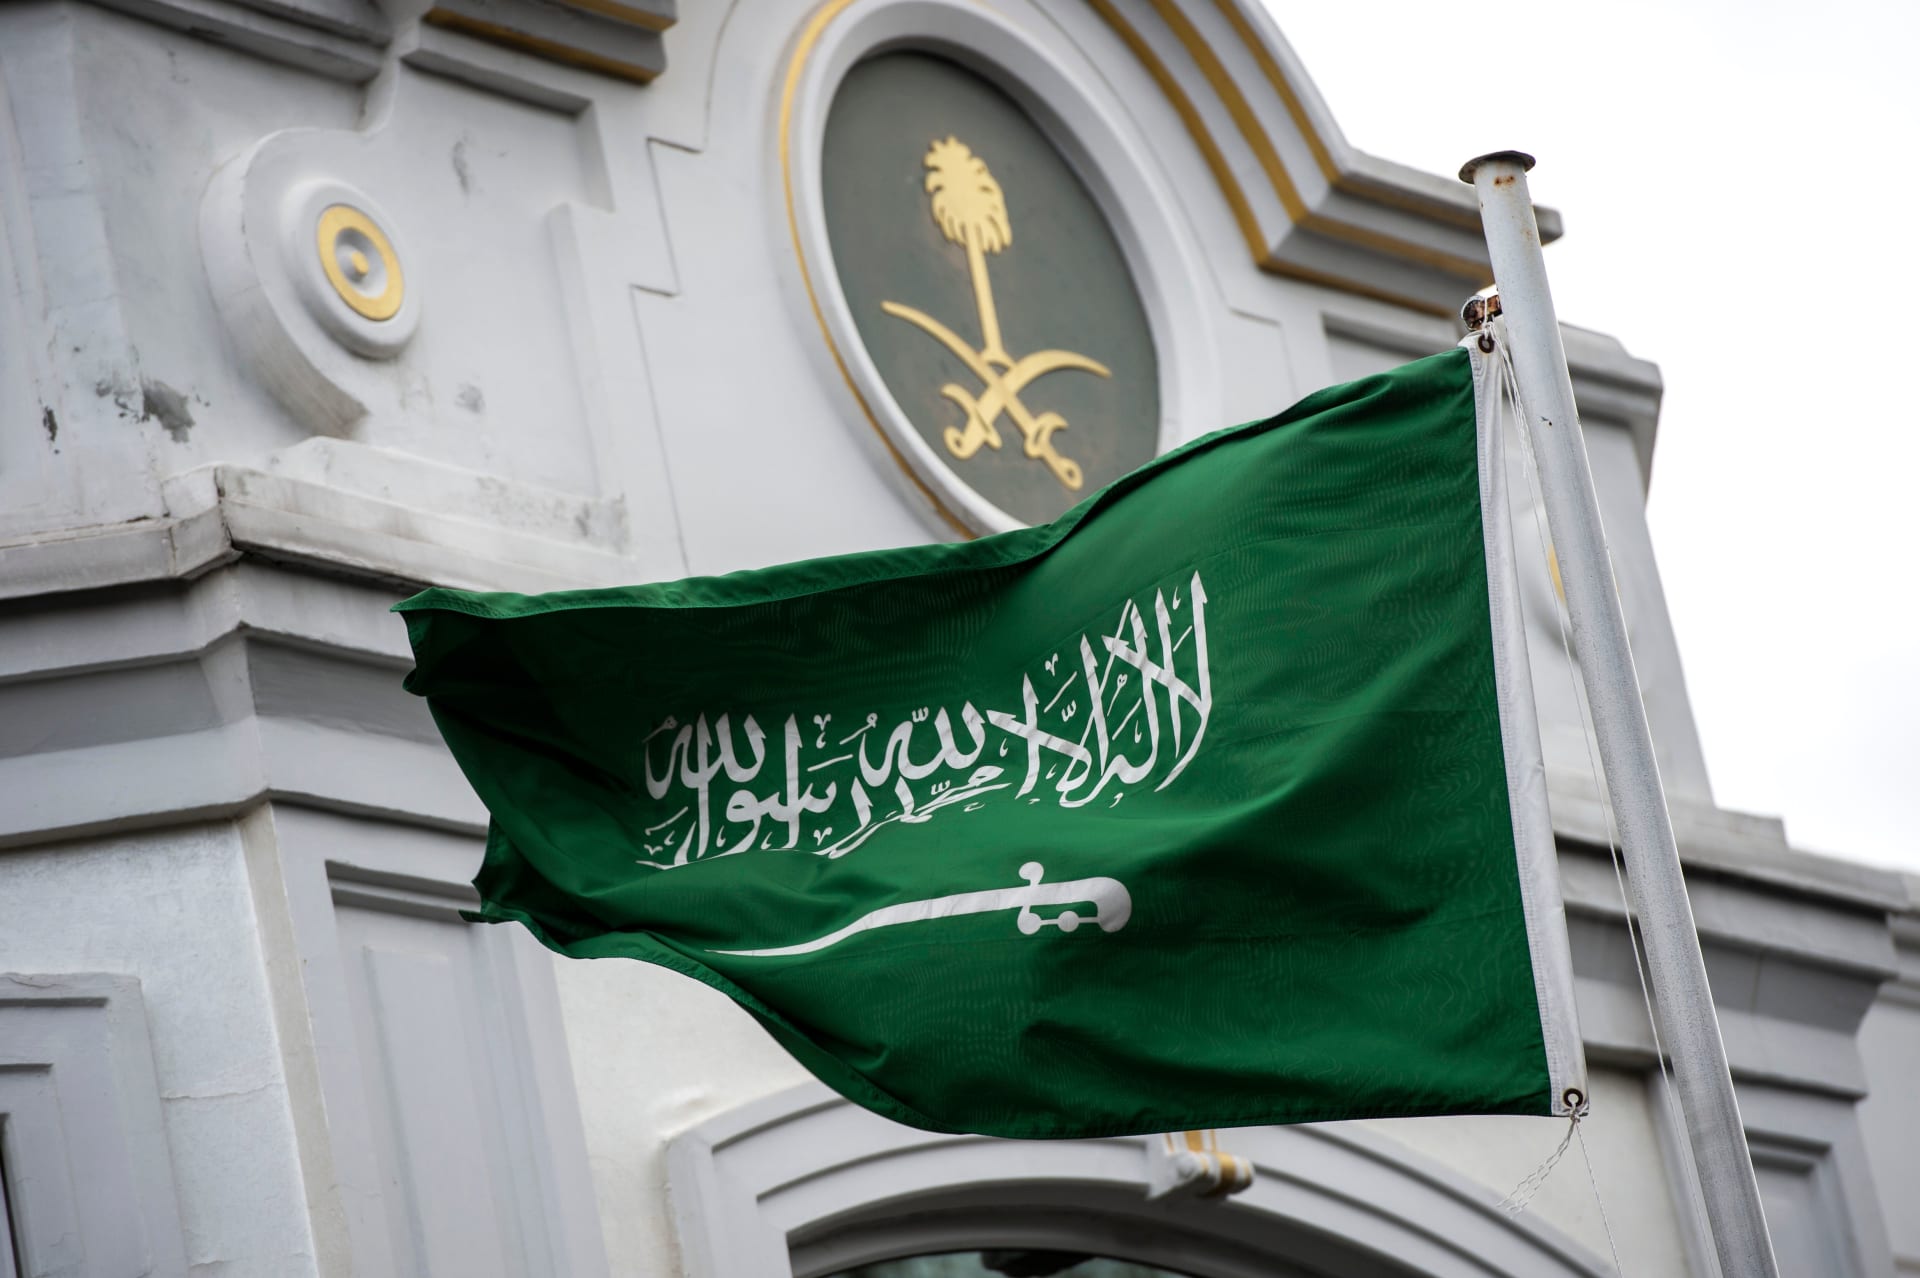 بشأن "حكم الإعدام".. أكاديمي سعودي يرد على أمير: لماذا يجب تبرير كل حدث لهؤلاء؟